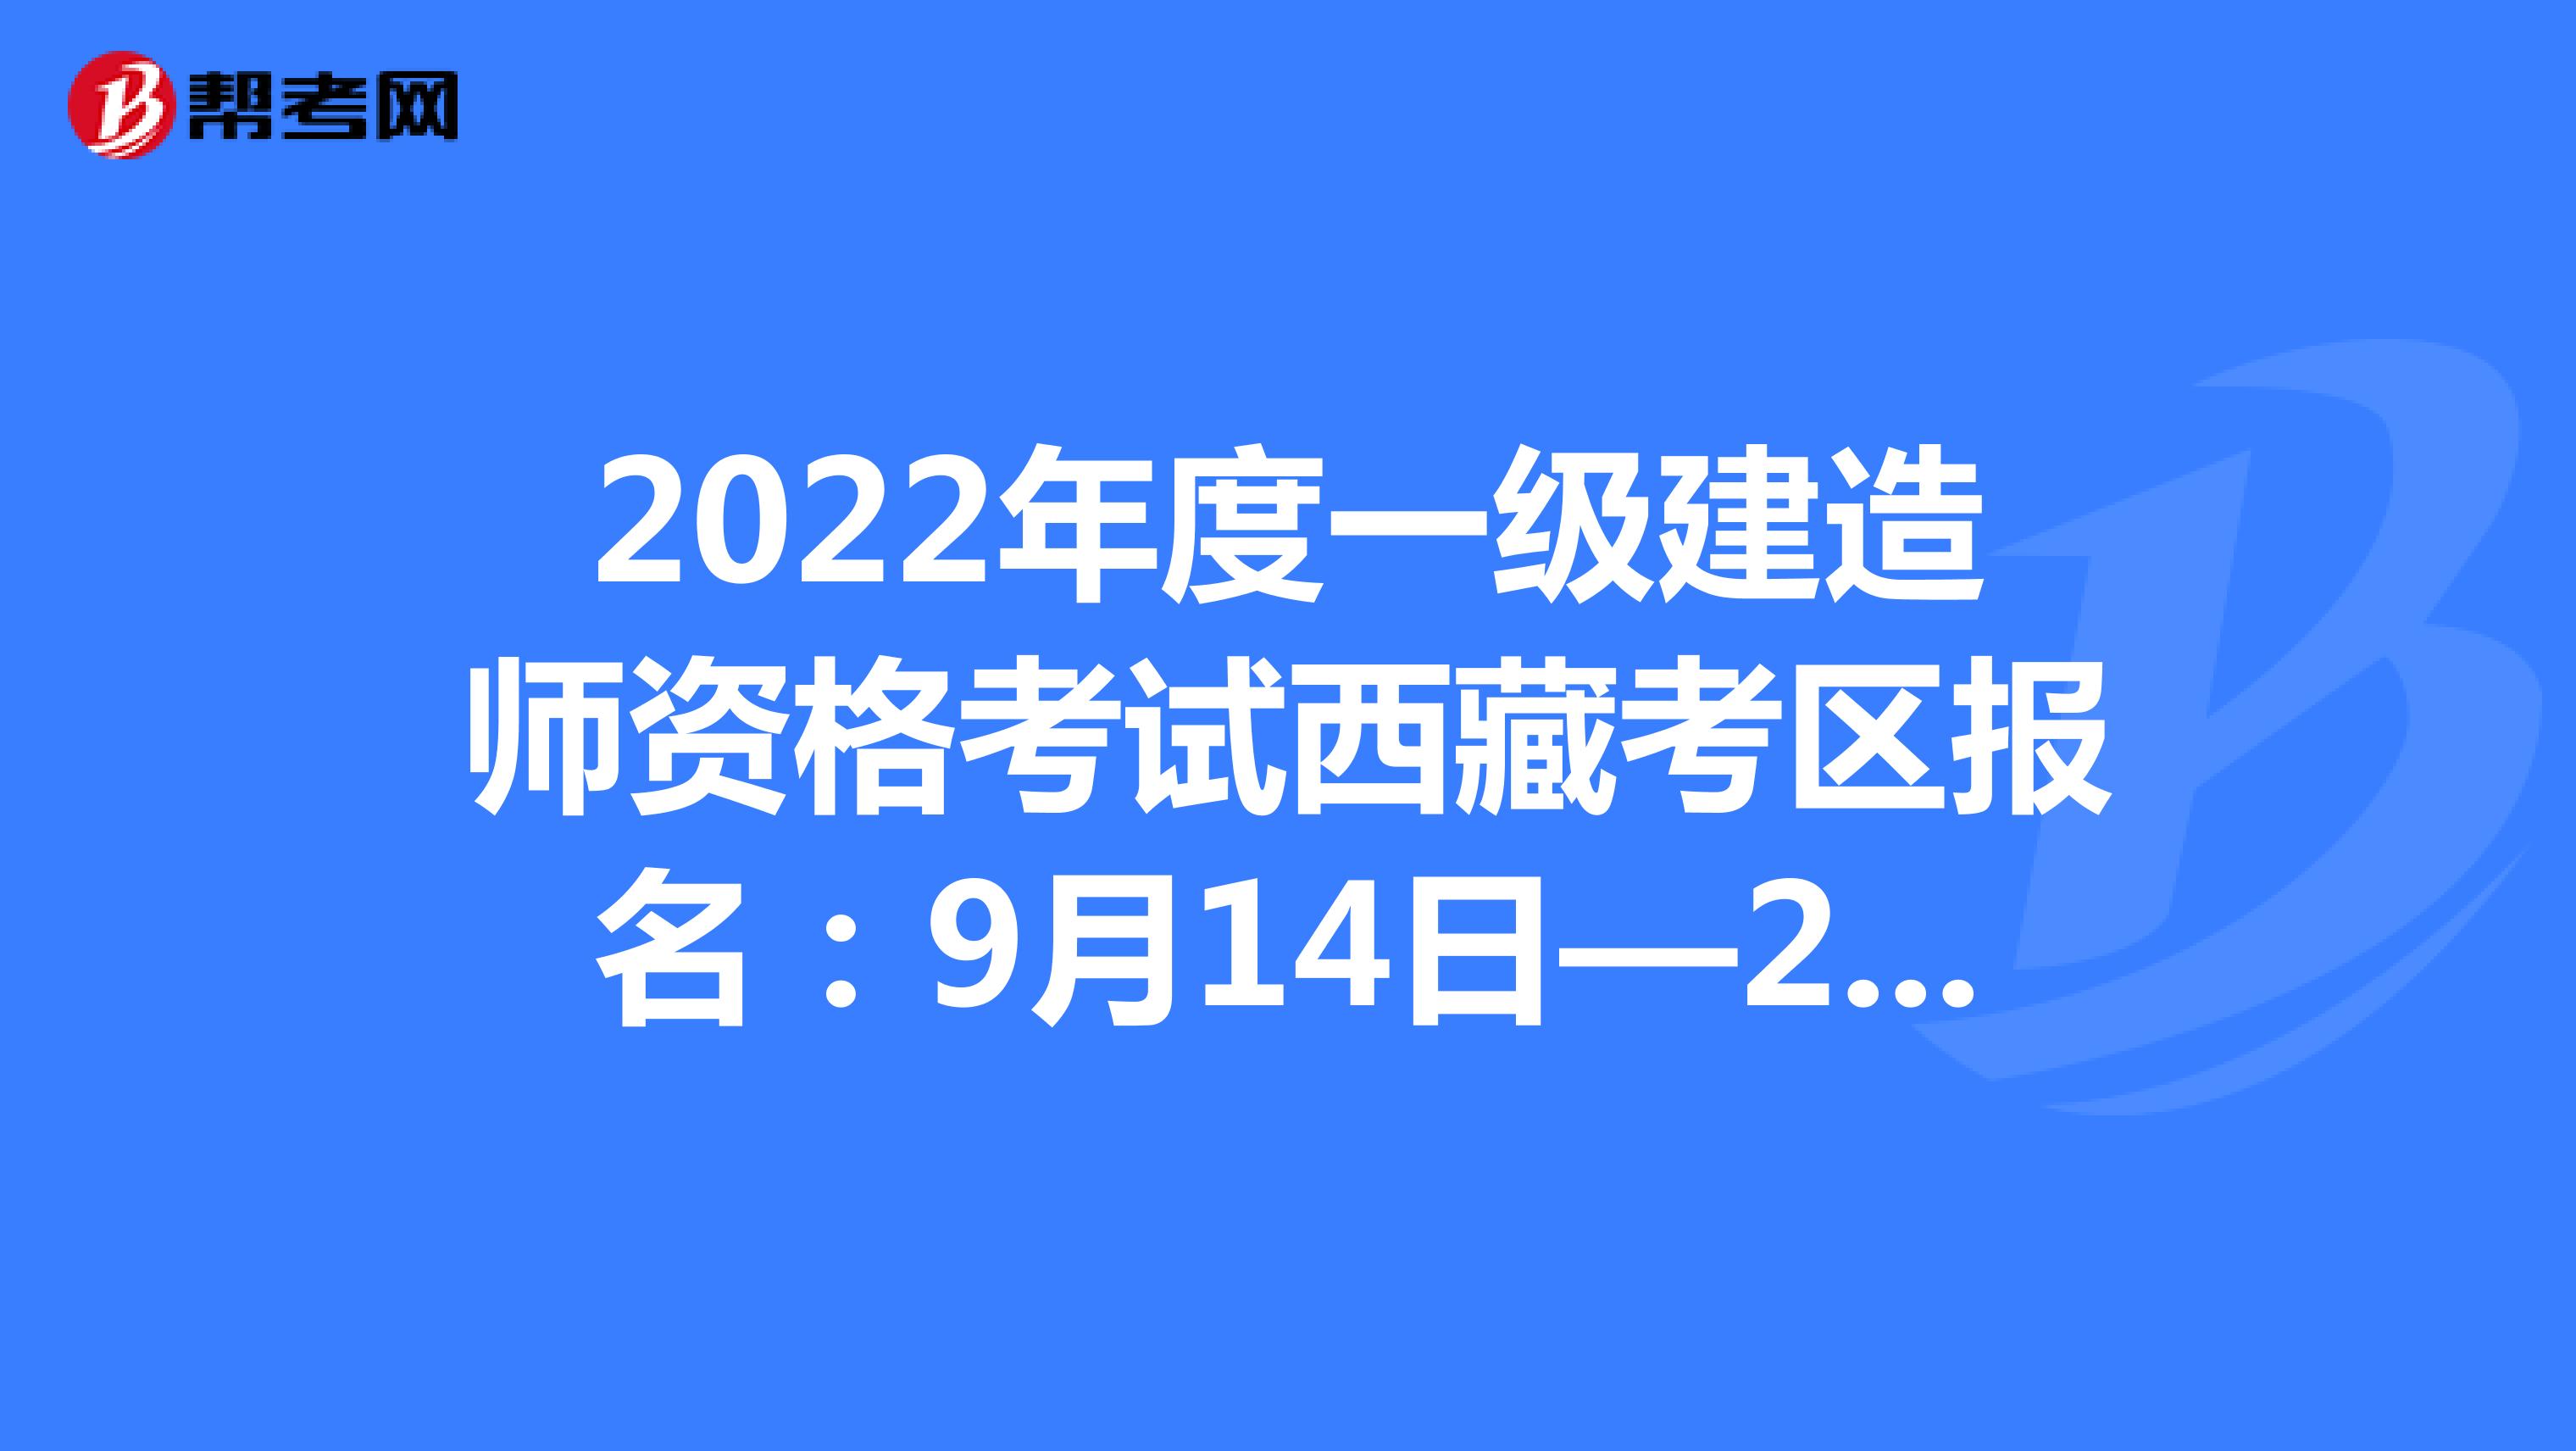 2022年度一级建造师资格考试西藏考区报名：9月14日—21日